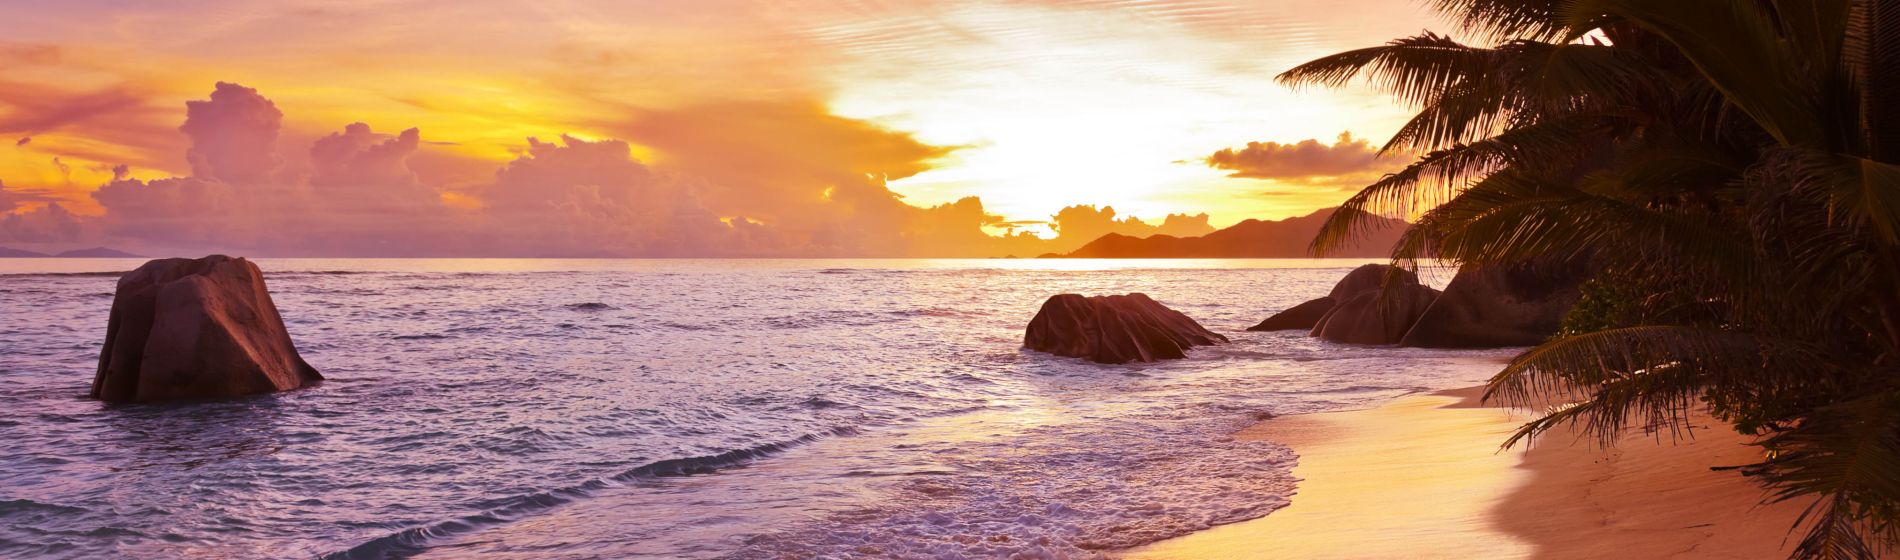 seychellen_sunset_on_tropical_beach_source_d_argent.jpg